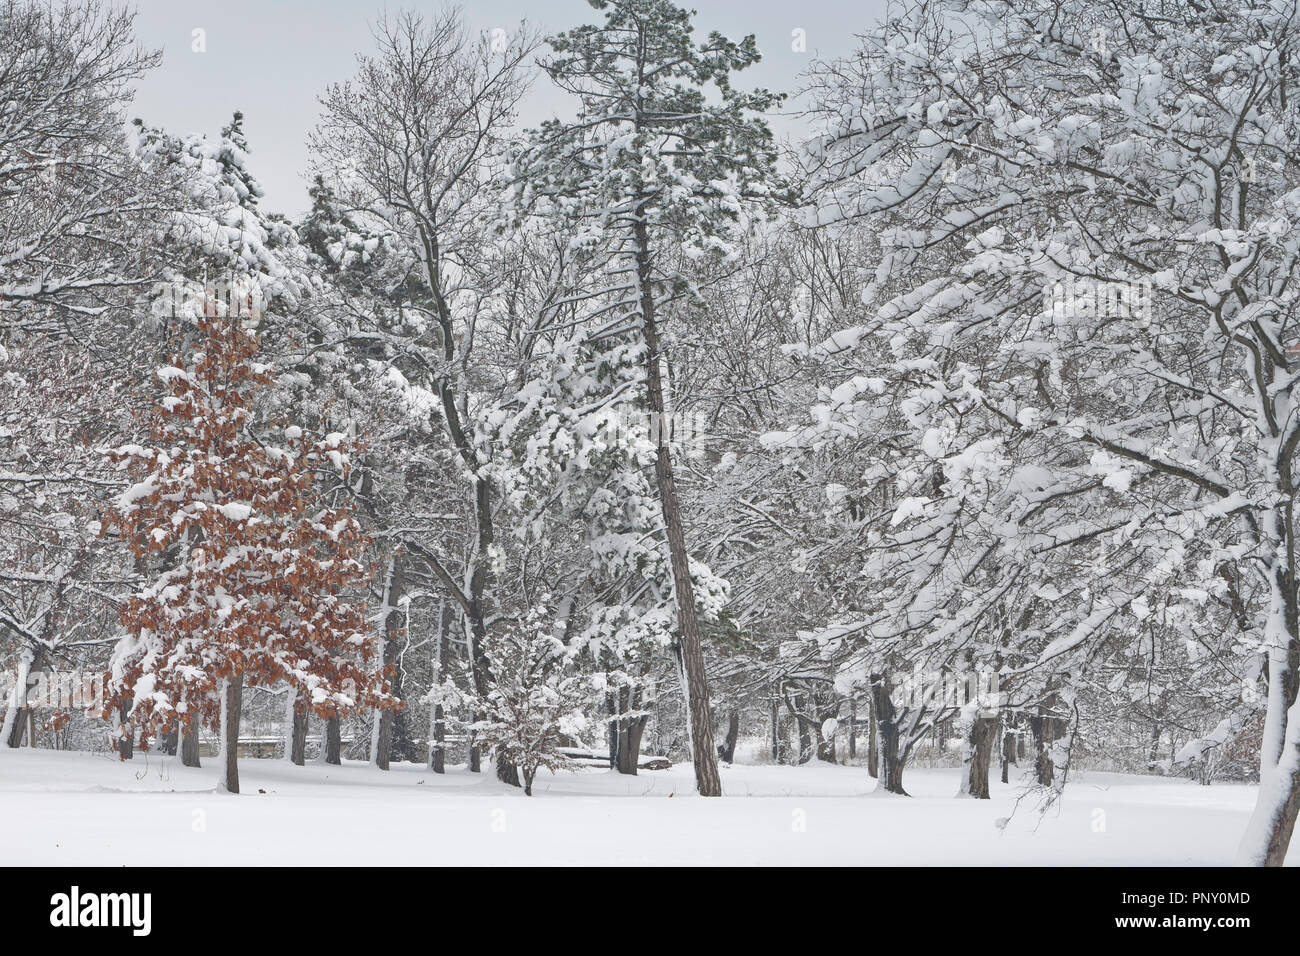 Neve dal giorno precedente attaccarsi ai rami di alberi dà il paesaggio a San Louis Forest Park un fresco, inverno-come l'apparenza in primavera. Foto Stock